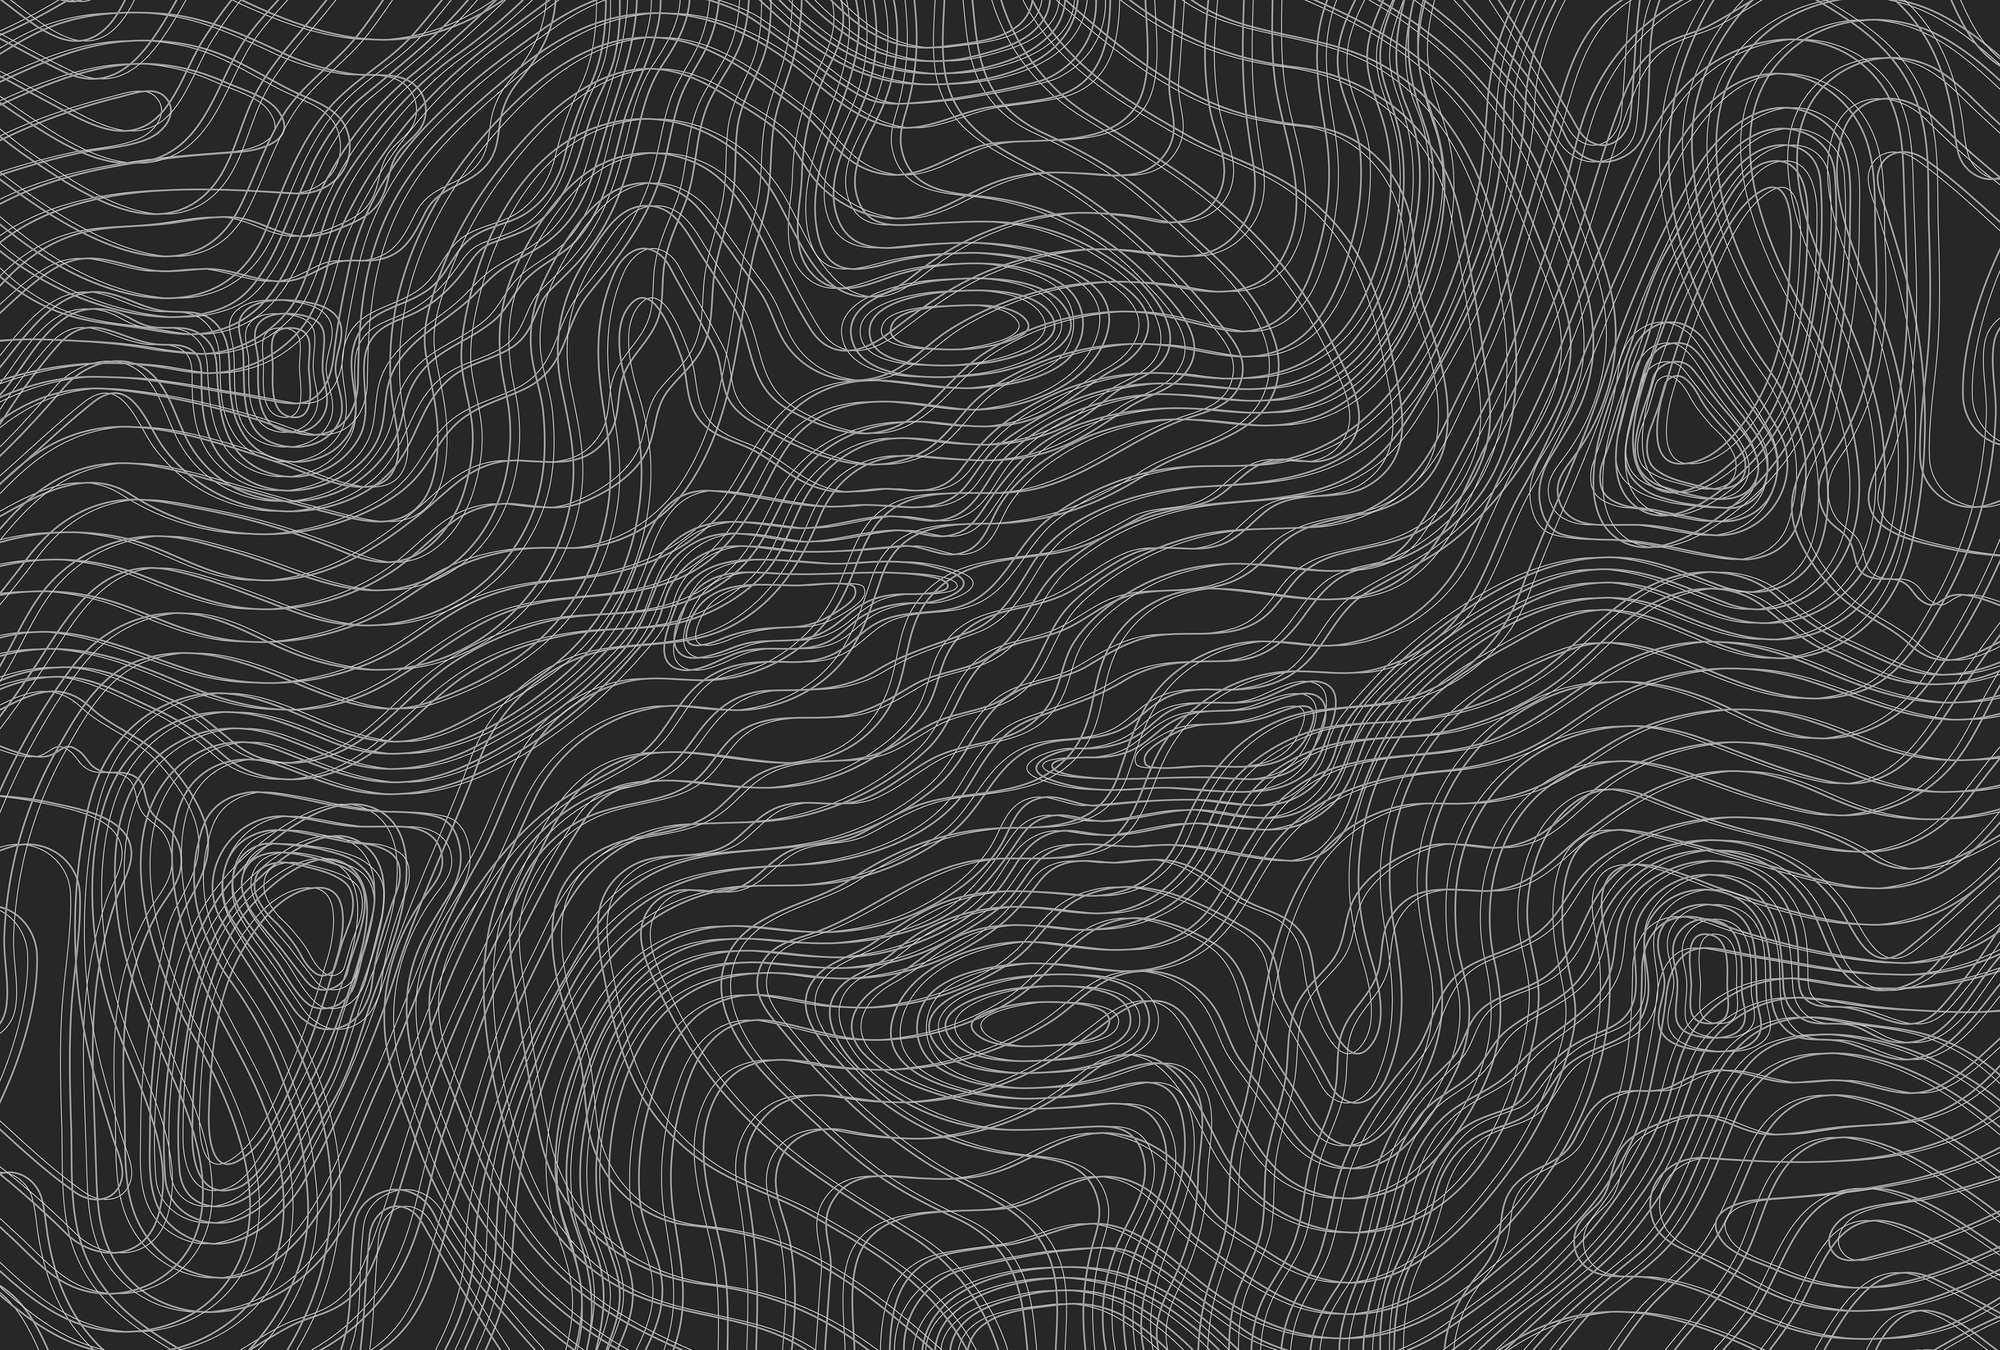             Donker fotobehang met lijnenpatroon, minimalistisch - Zwart, Wit
        